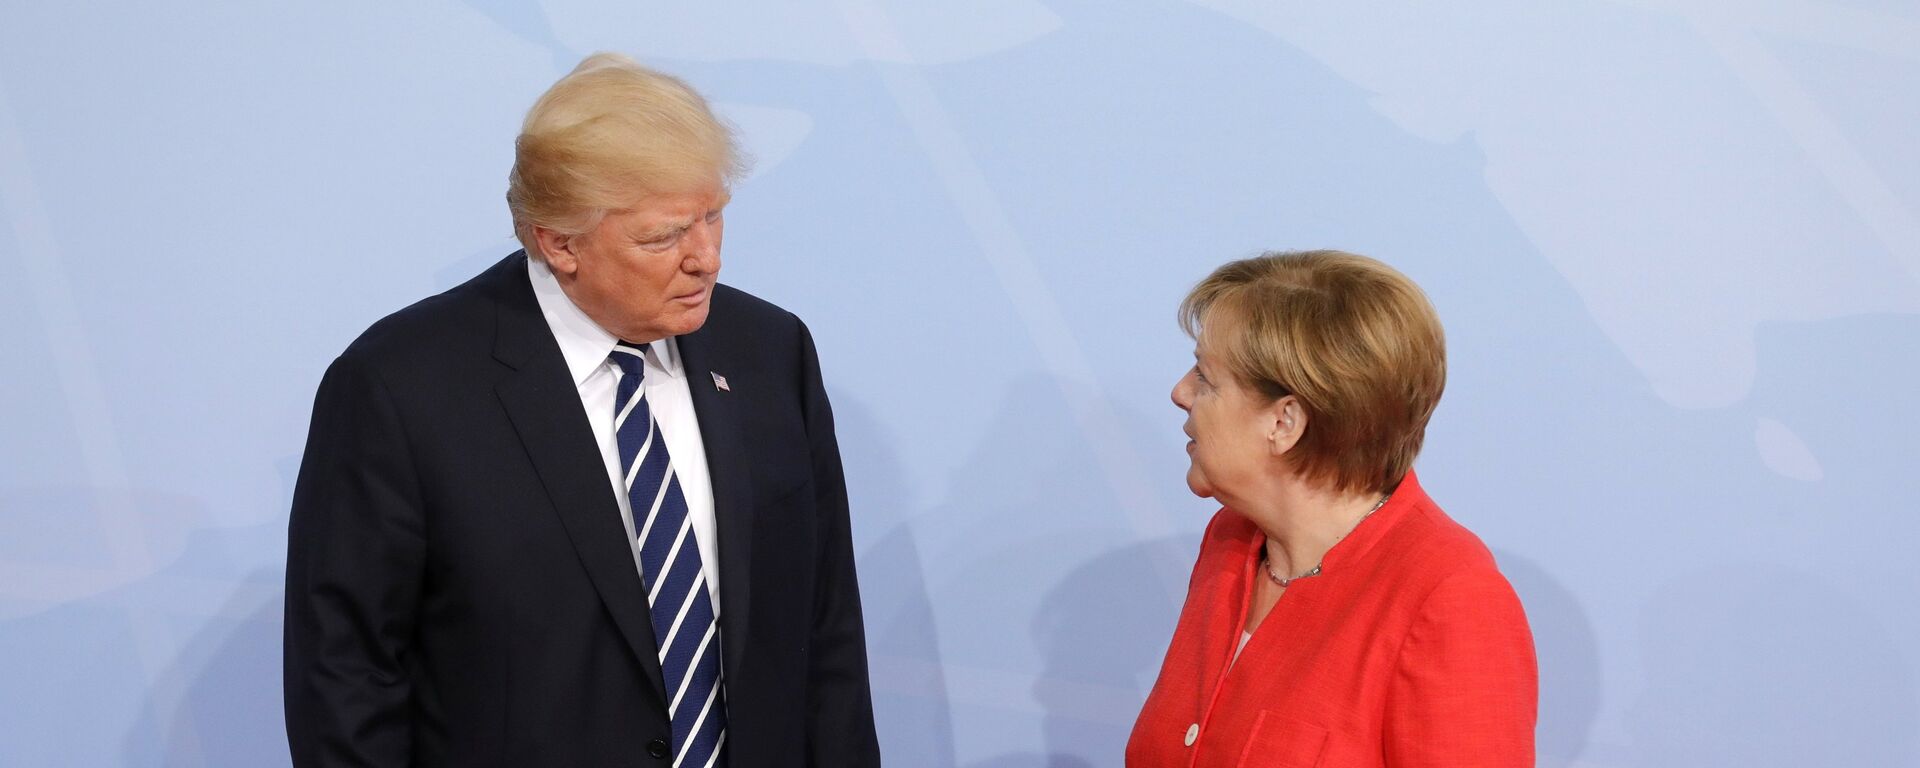 Президент США Дональд Трамп на церемонии официальной встречи канцлером Германии Ангелой Меркель - Sputnik Латвия, 1920, 08.06.2020